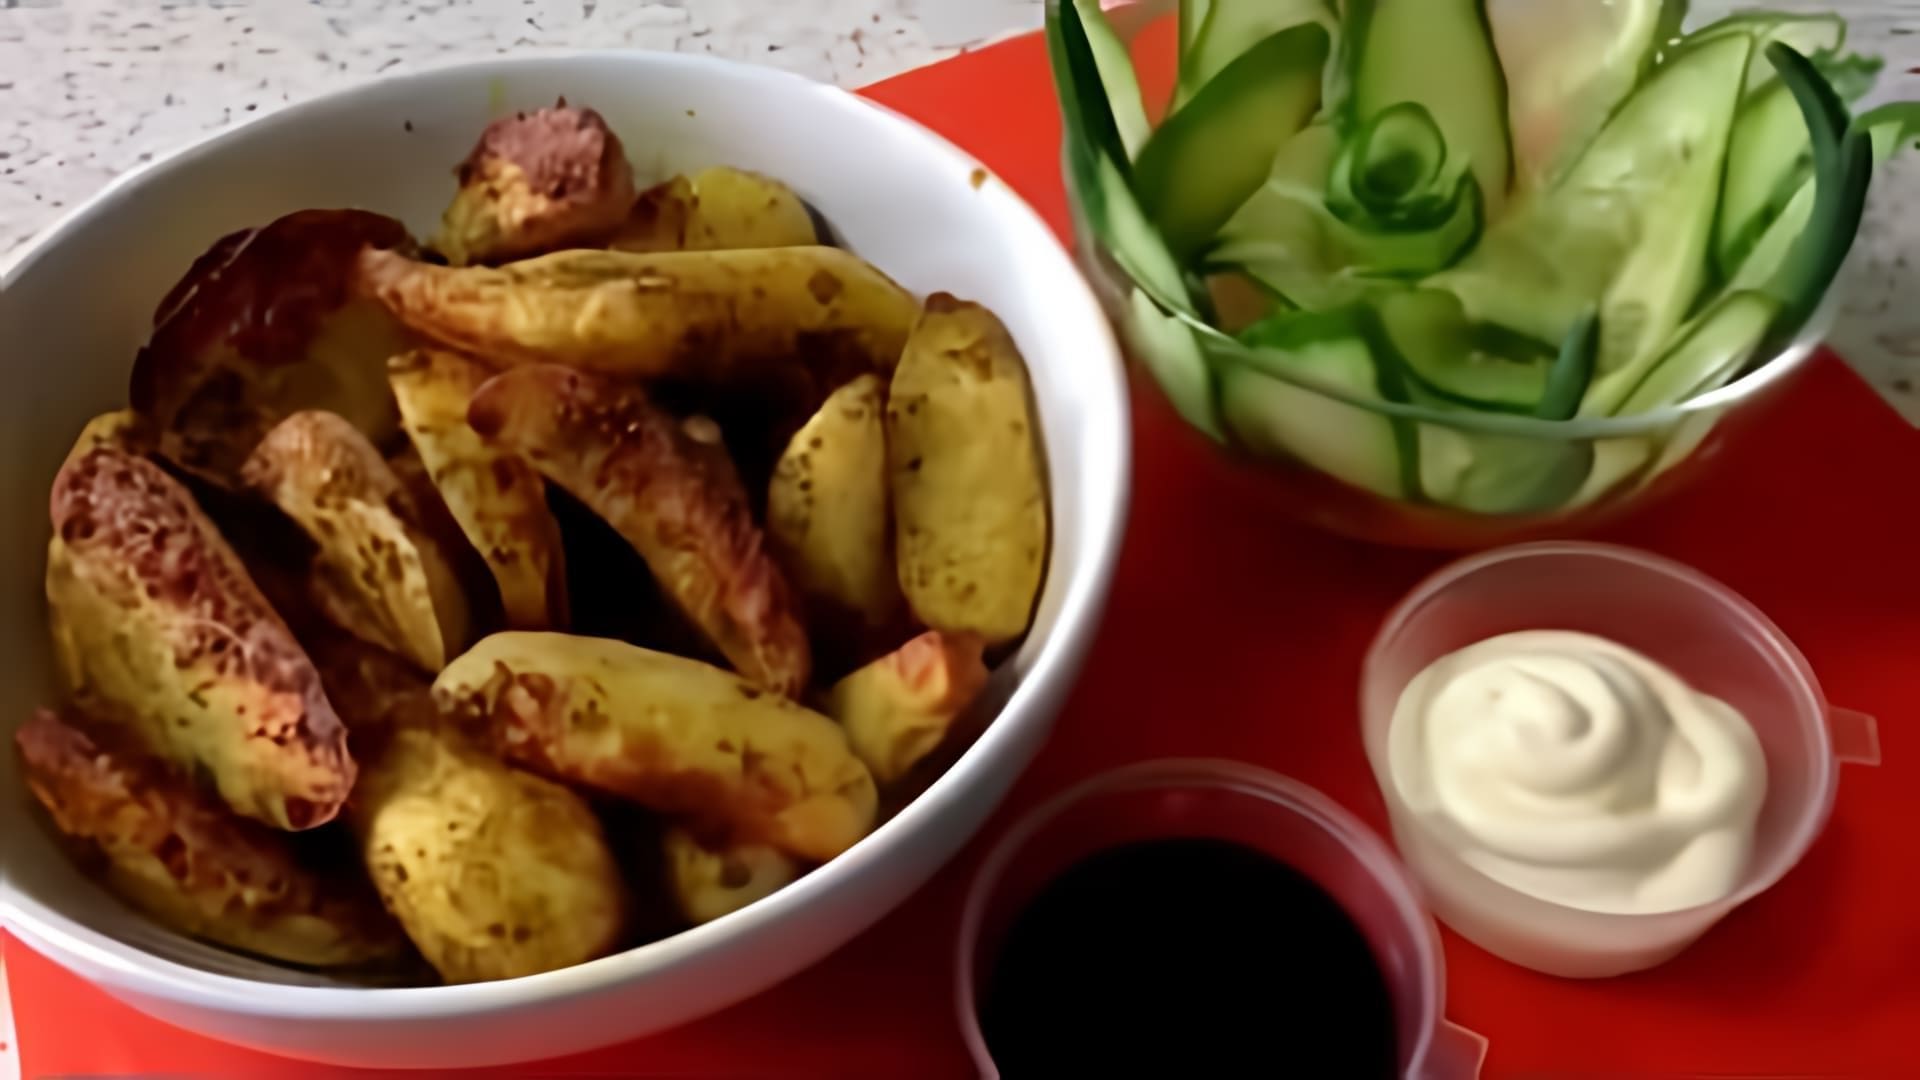 В этом видео демонстрируется процесс приготовления картофеля в аэрогриле